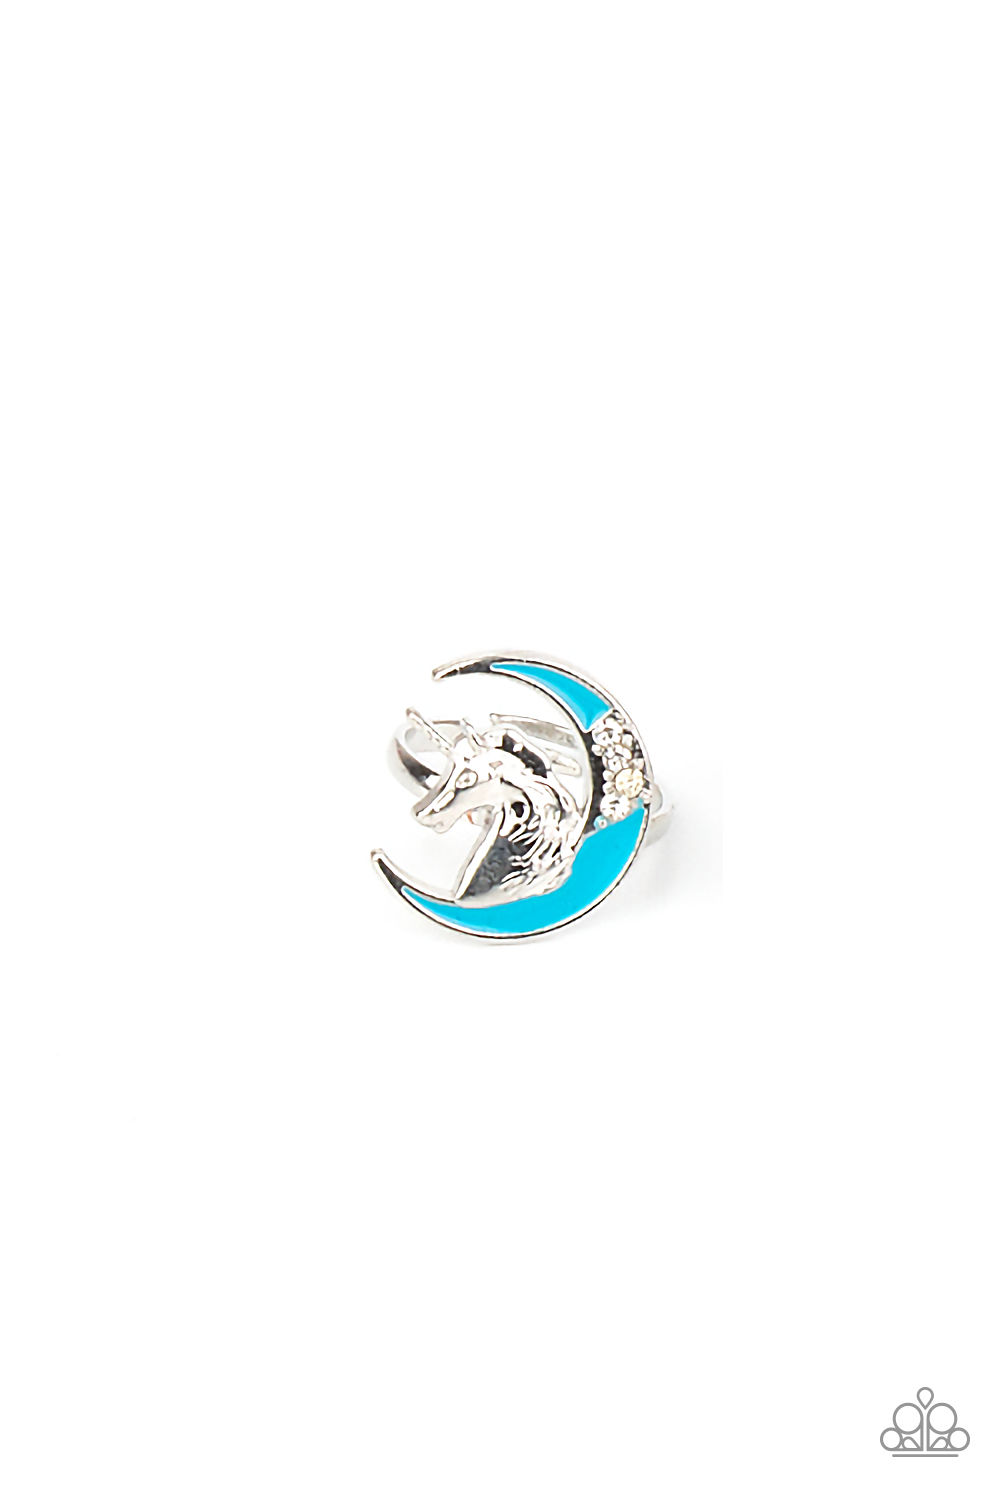 Ring - Strlt Shmr Unicorn Moon/Stone - Blue/White